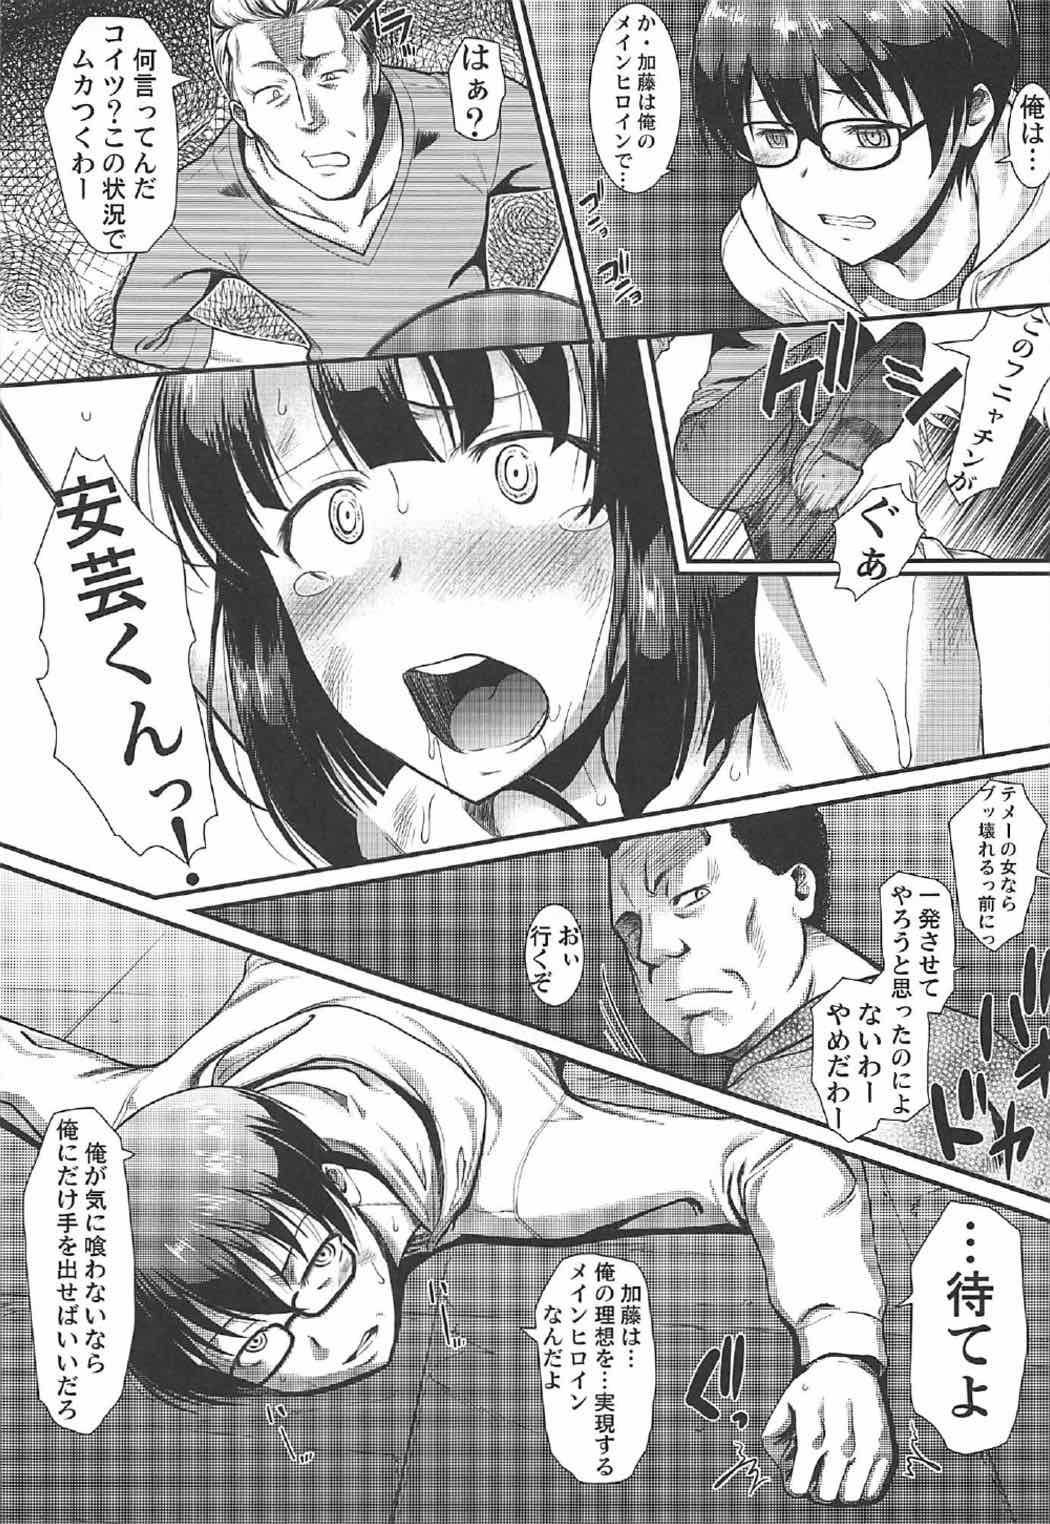 Toy Kimi wa Boku no Taiyou da 2 - Saenai heroine no sodatekata Secret - Page 8